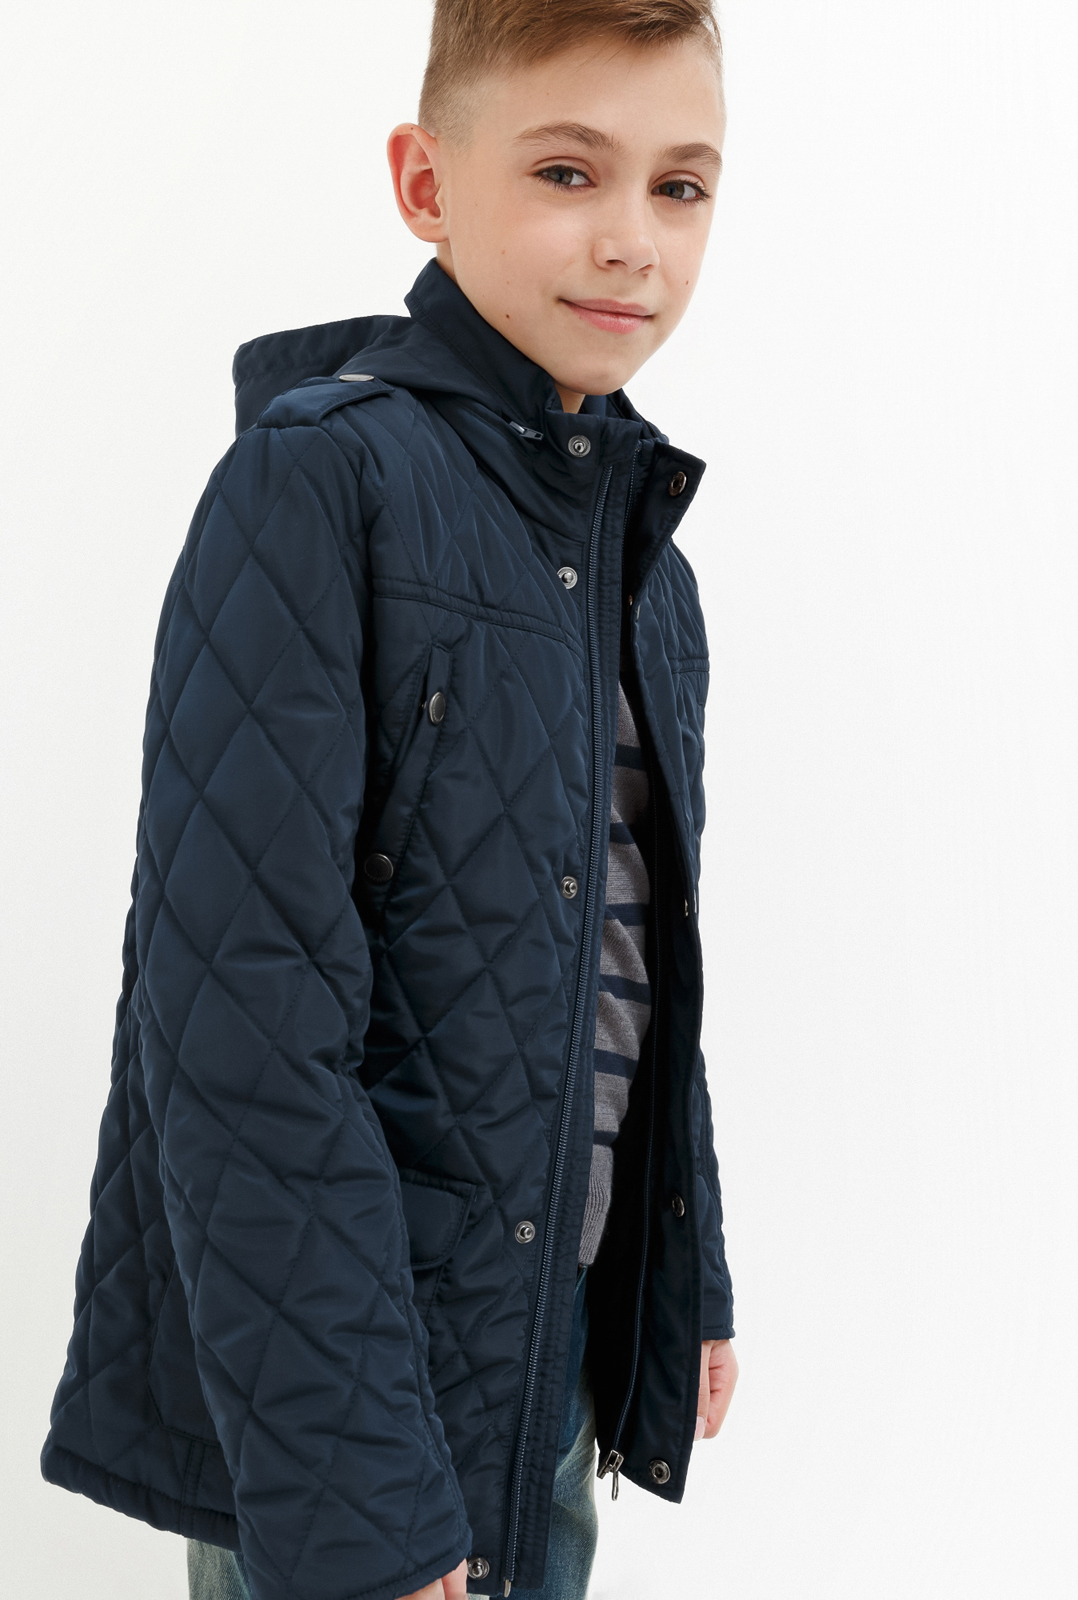 Куртка для мальчика Acoola Jim, цвет: темно-голубой. 20140130026_600. Размер 134